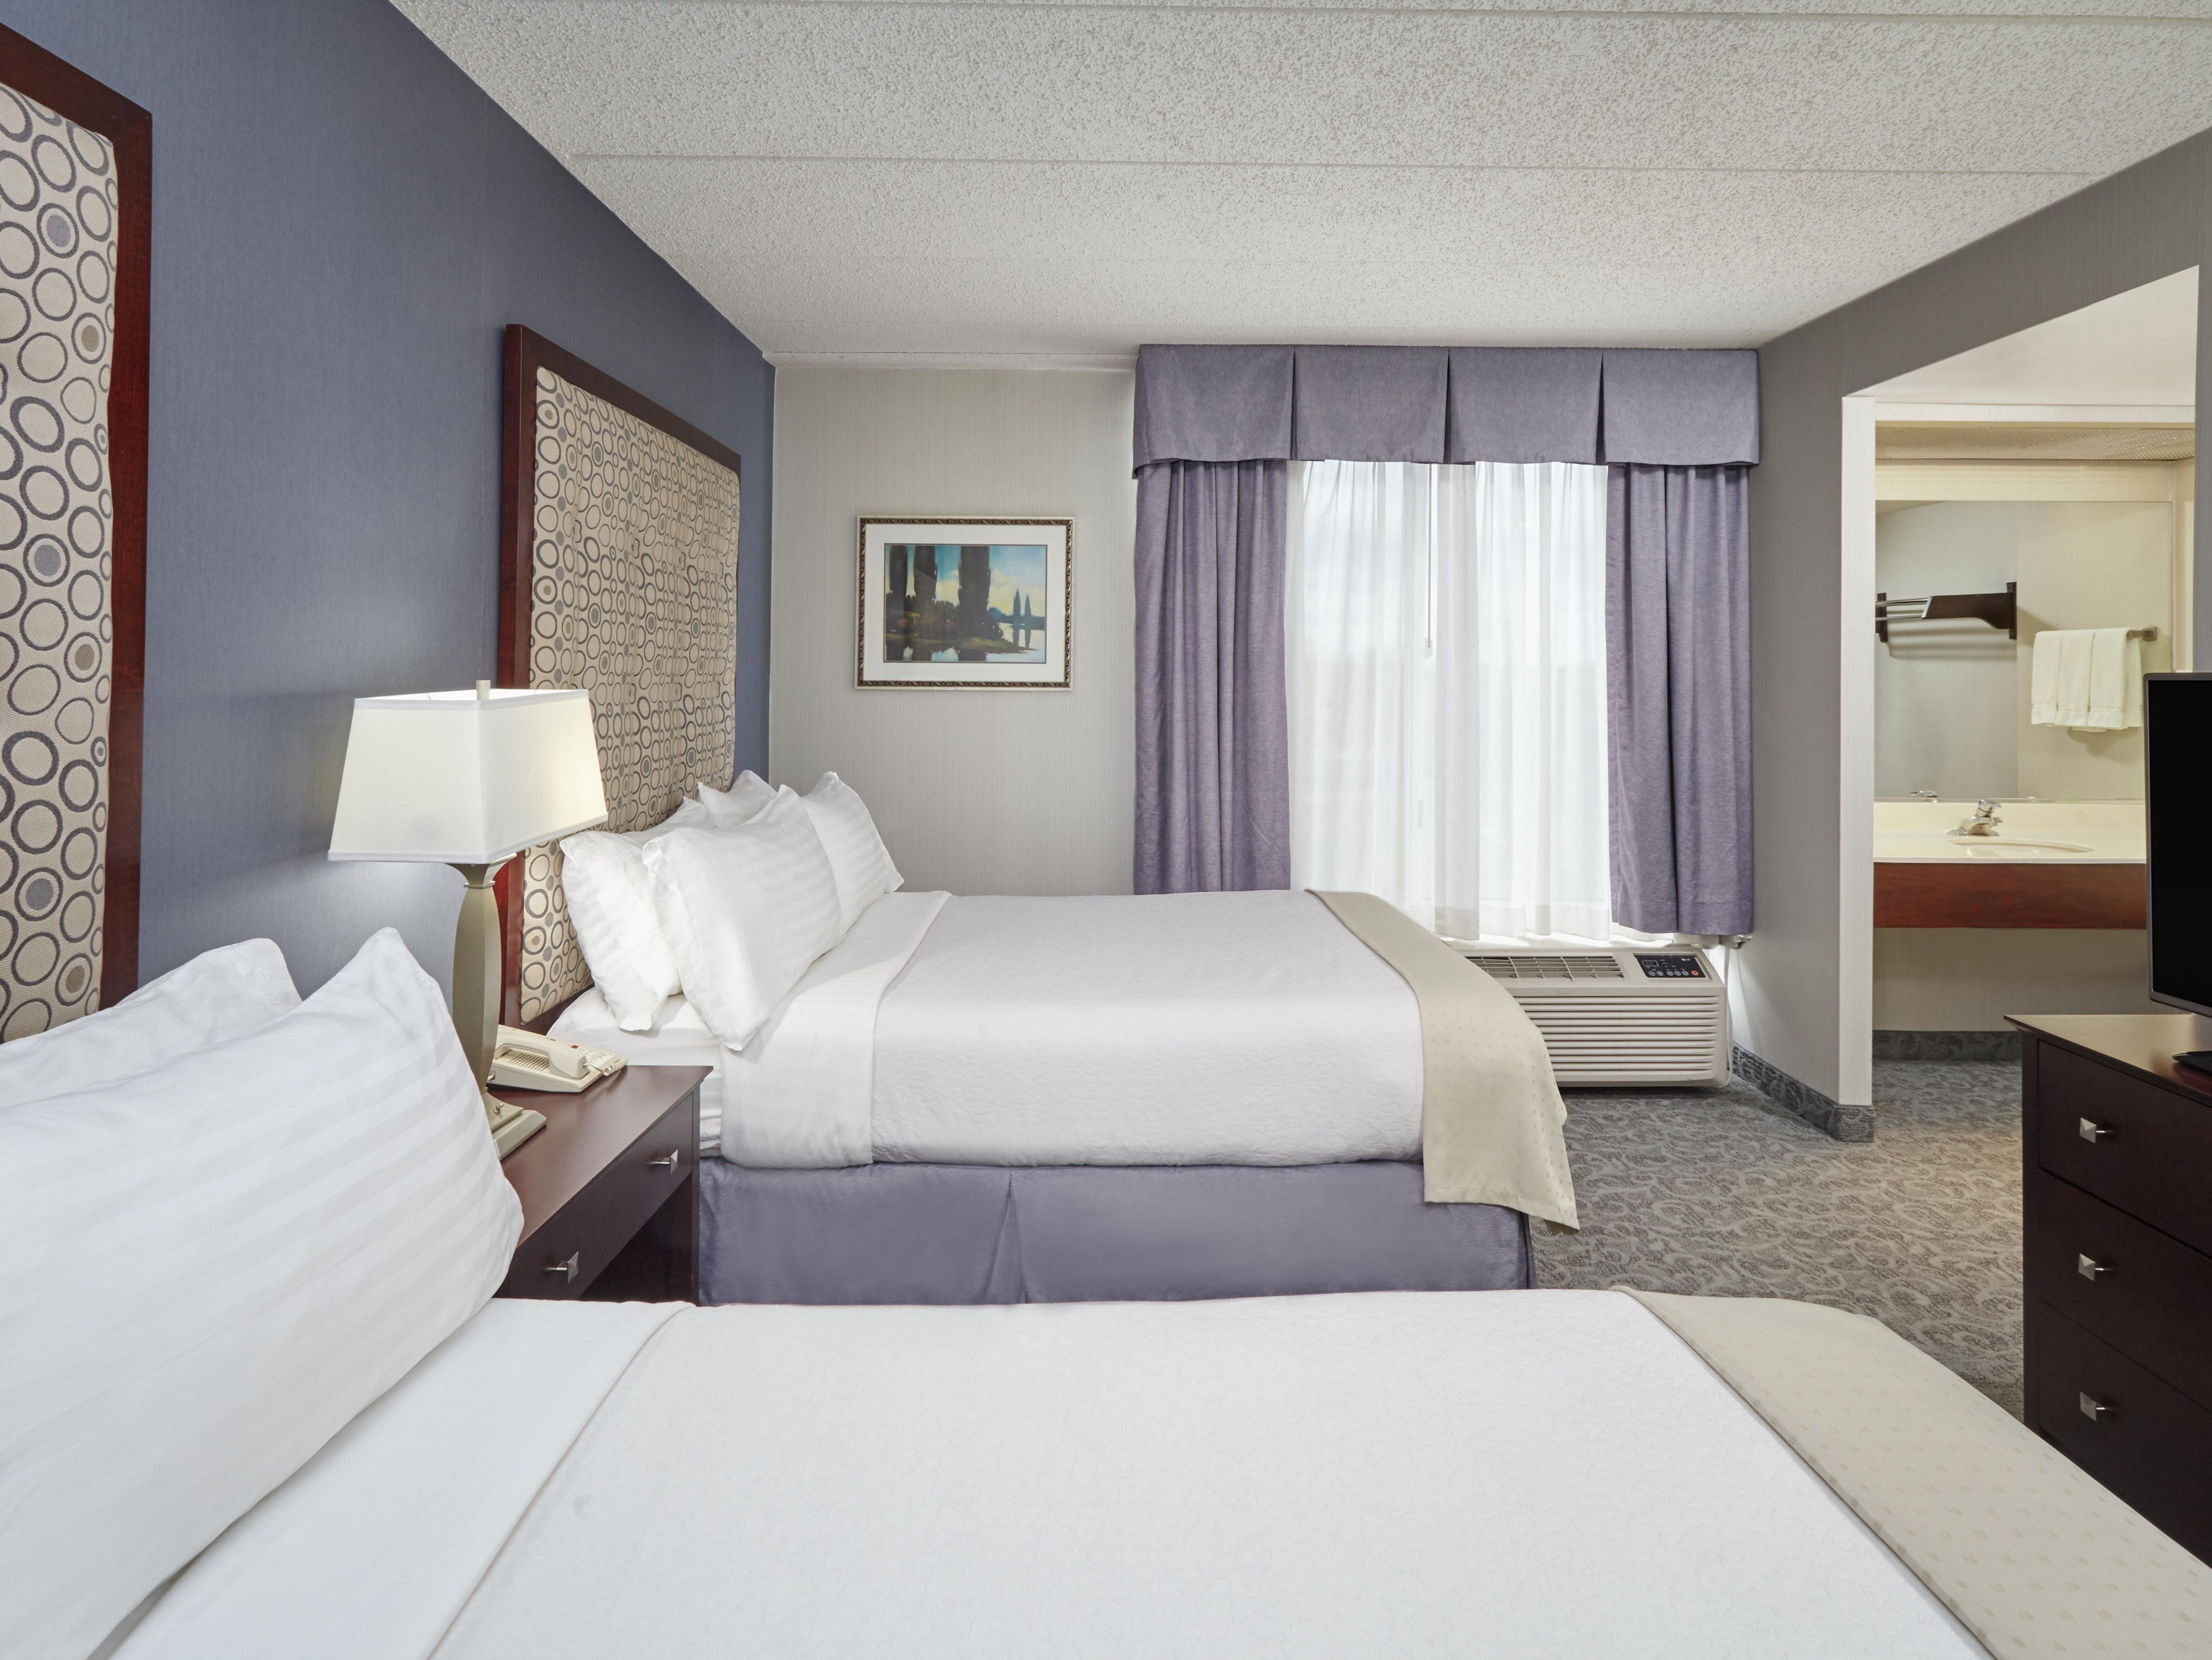 Habitaciones en hoteles Holiday Inn